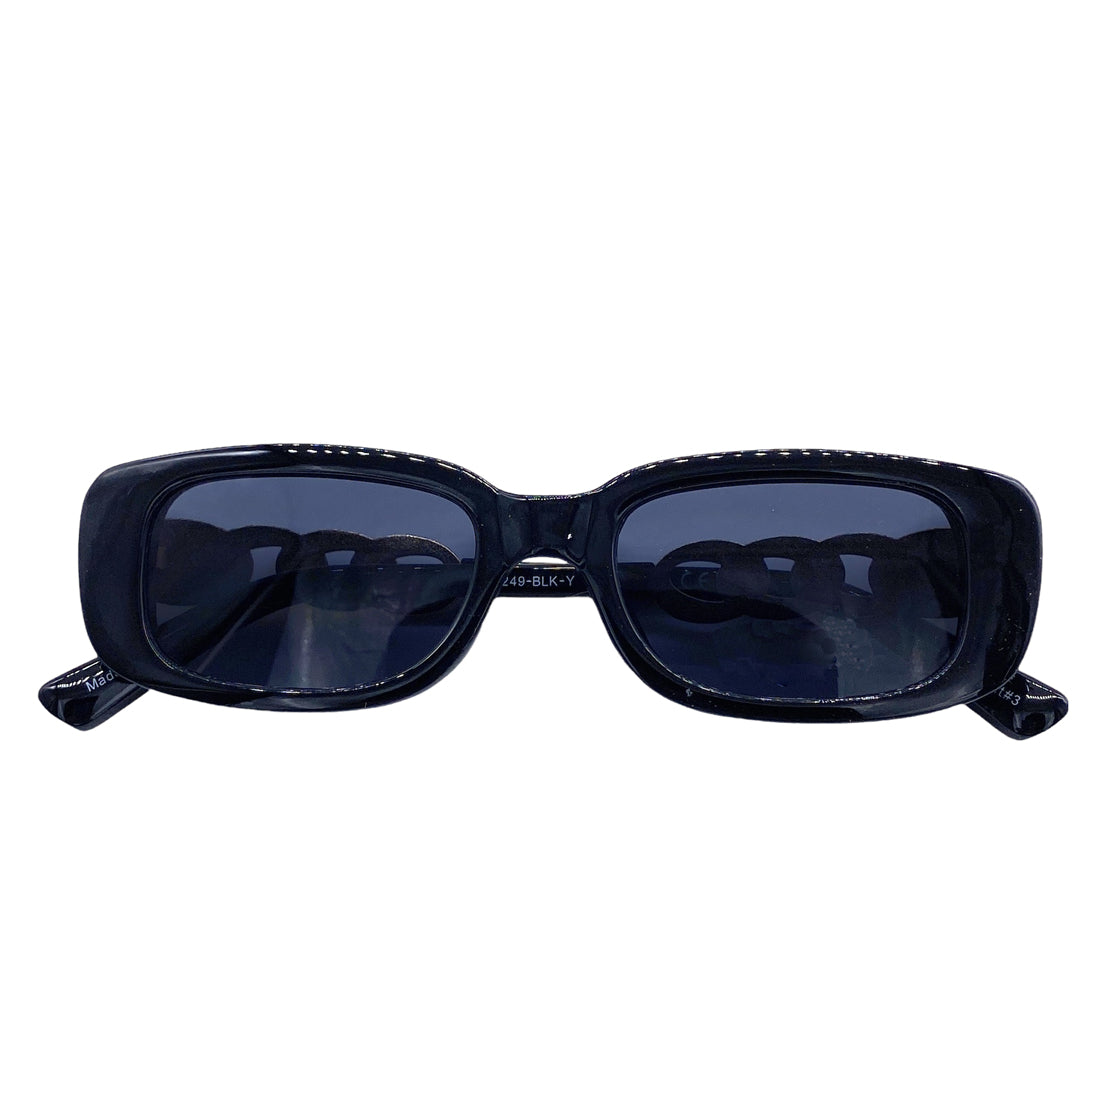 Empire Cove Rectangle Sunglasses Trendy Retro Narrow Square UV Protection Driving 